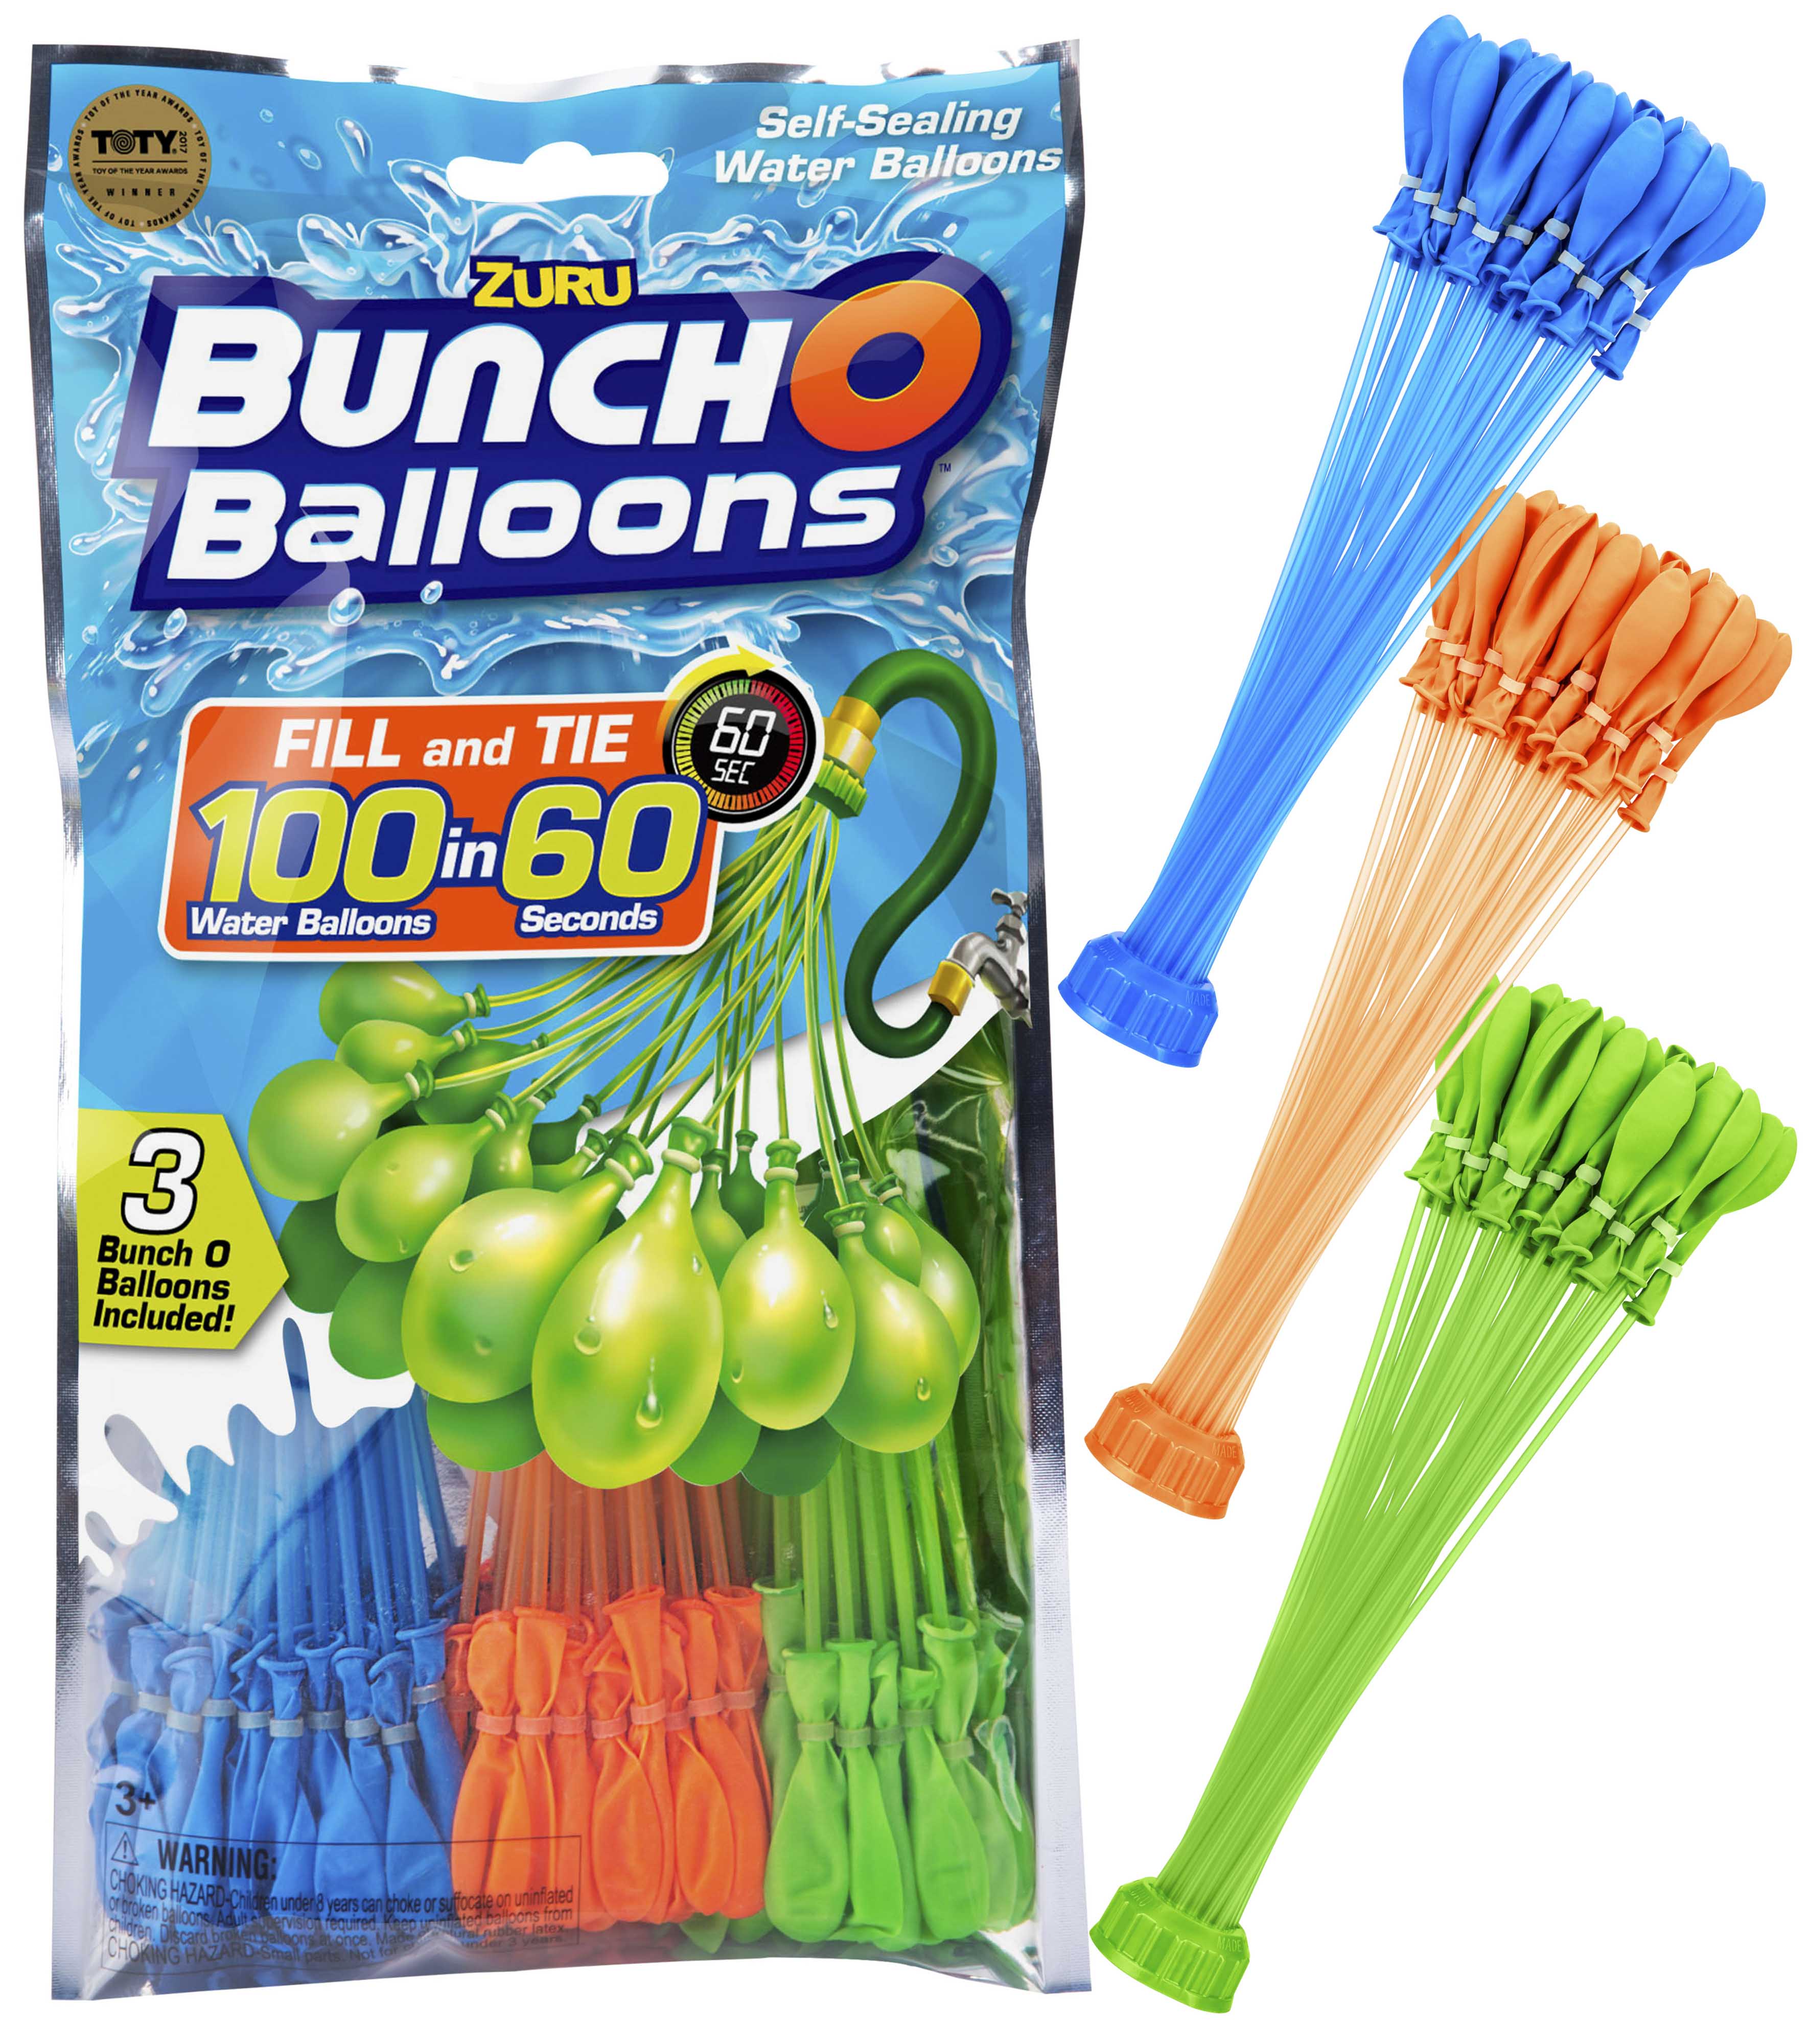 ZURU Bunch O Balloons 100 Selbstverschluss Wasserbomben OVP NEU 